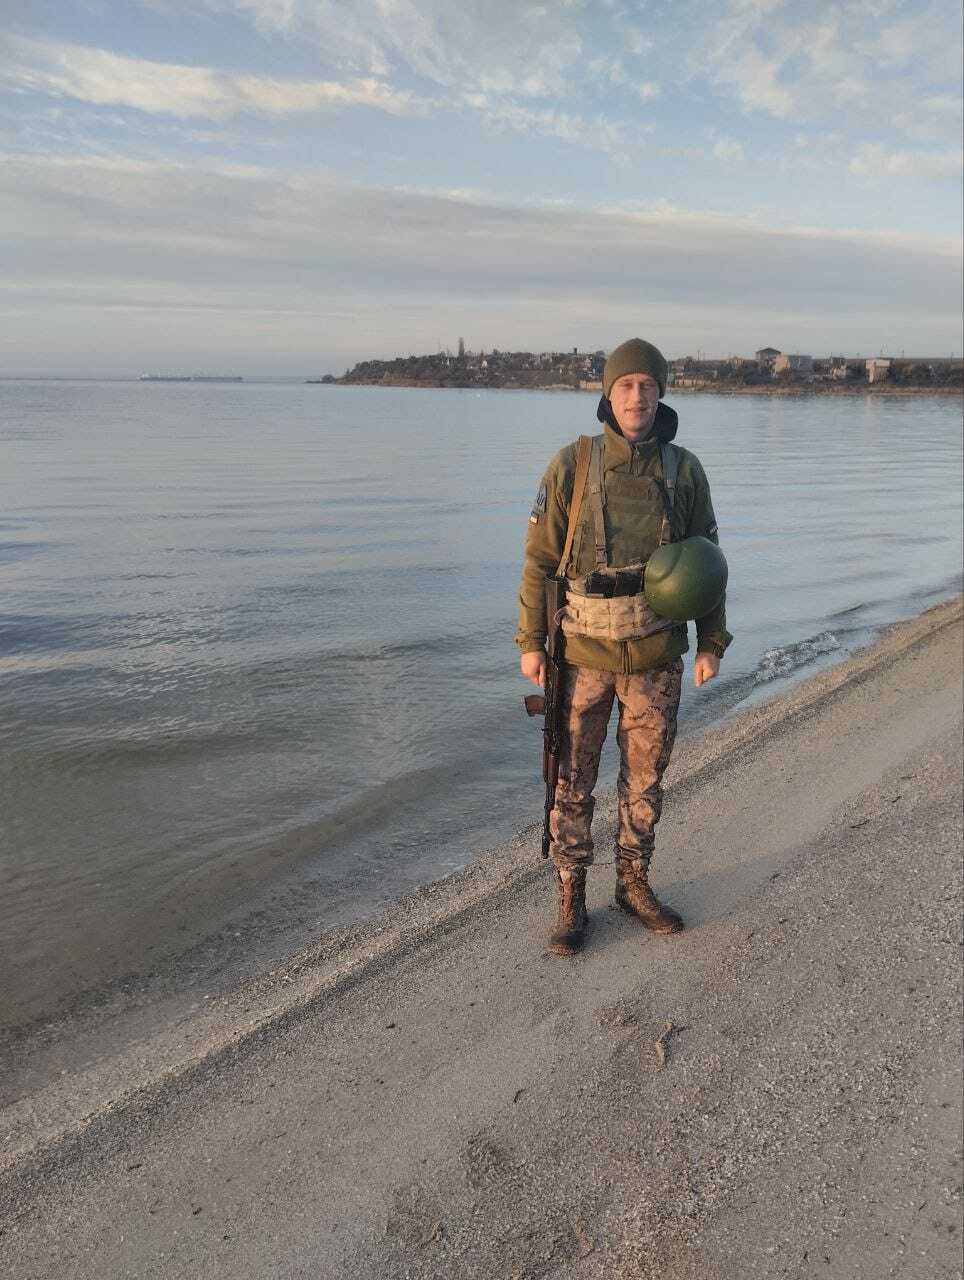 Йому назавжди 22: на Одещині попрощалися з воїном, який загинув у боях на Донеччині. Фото